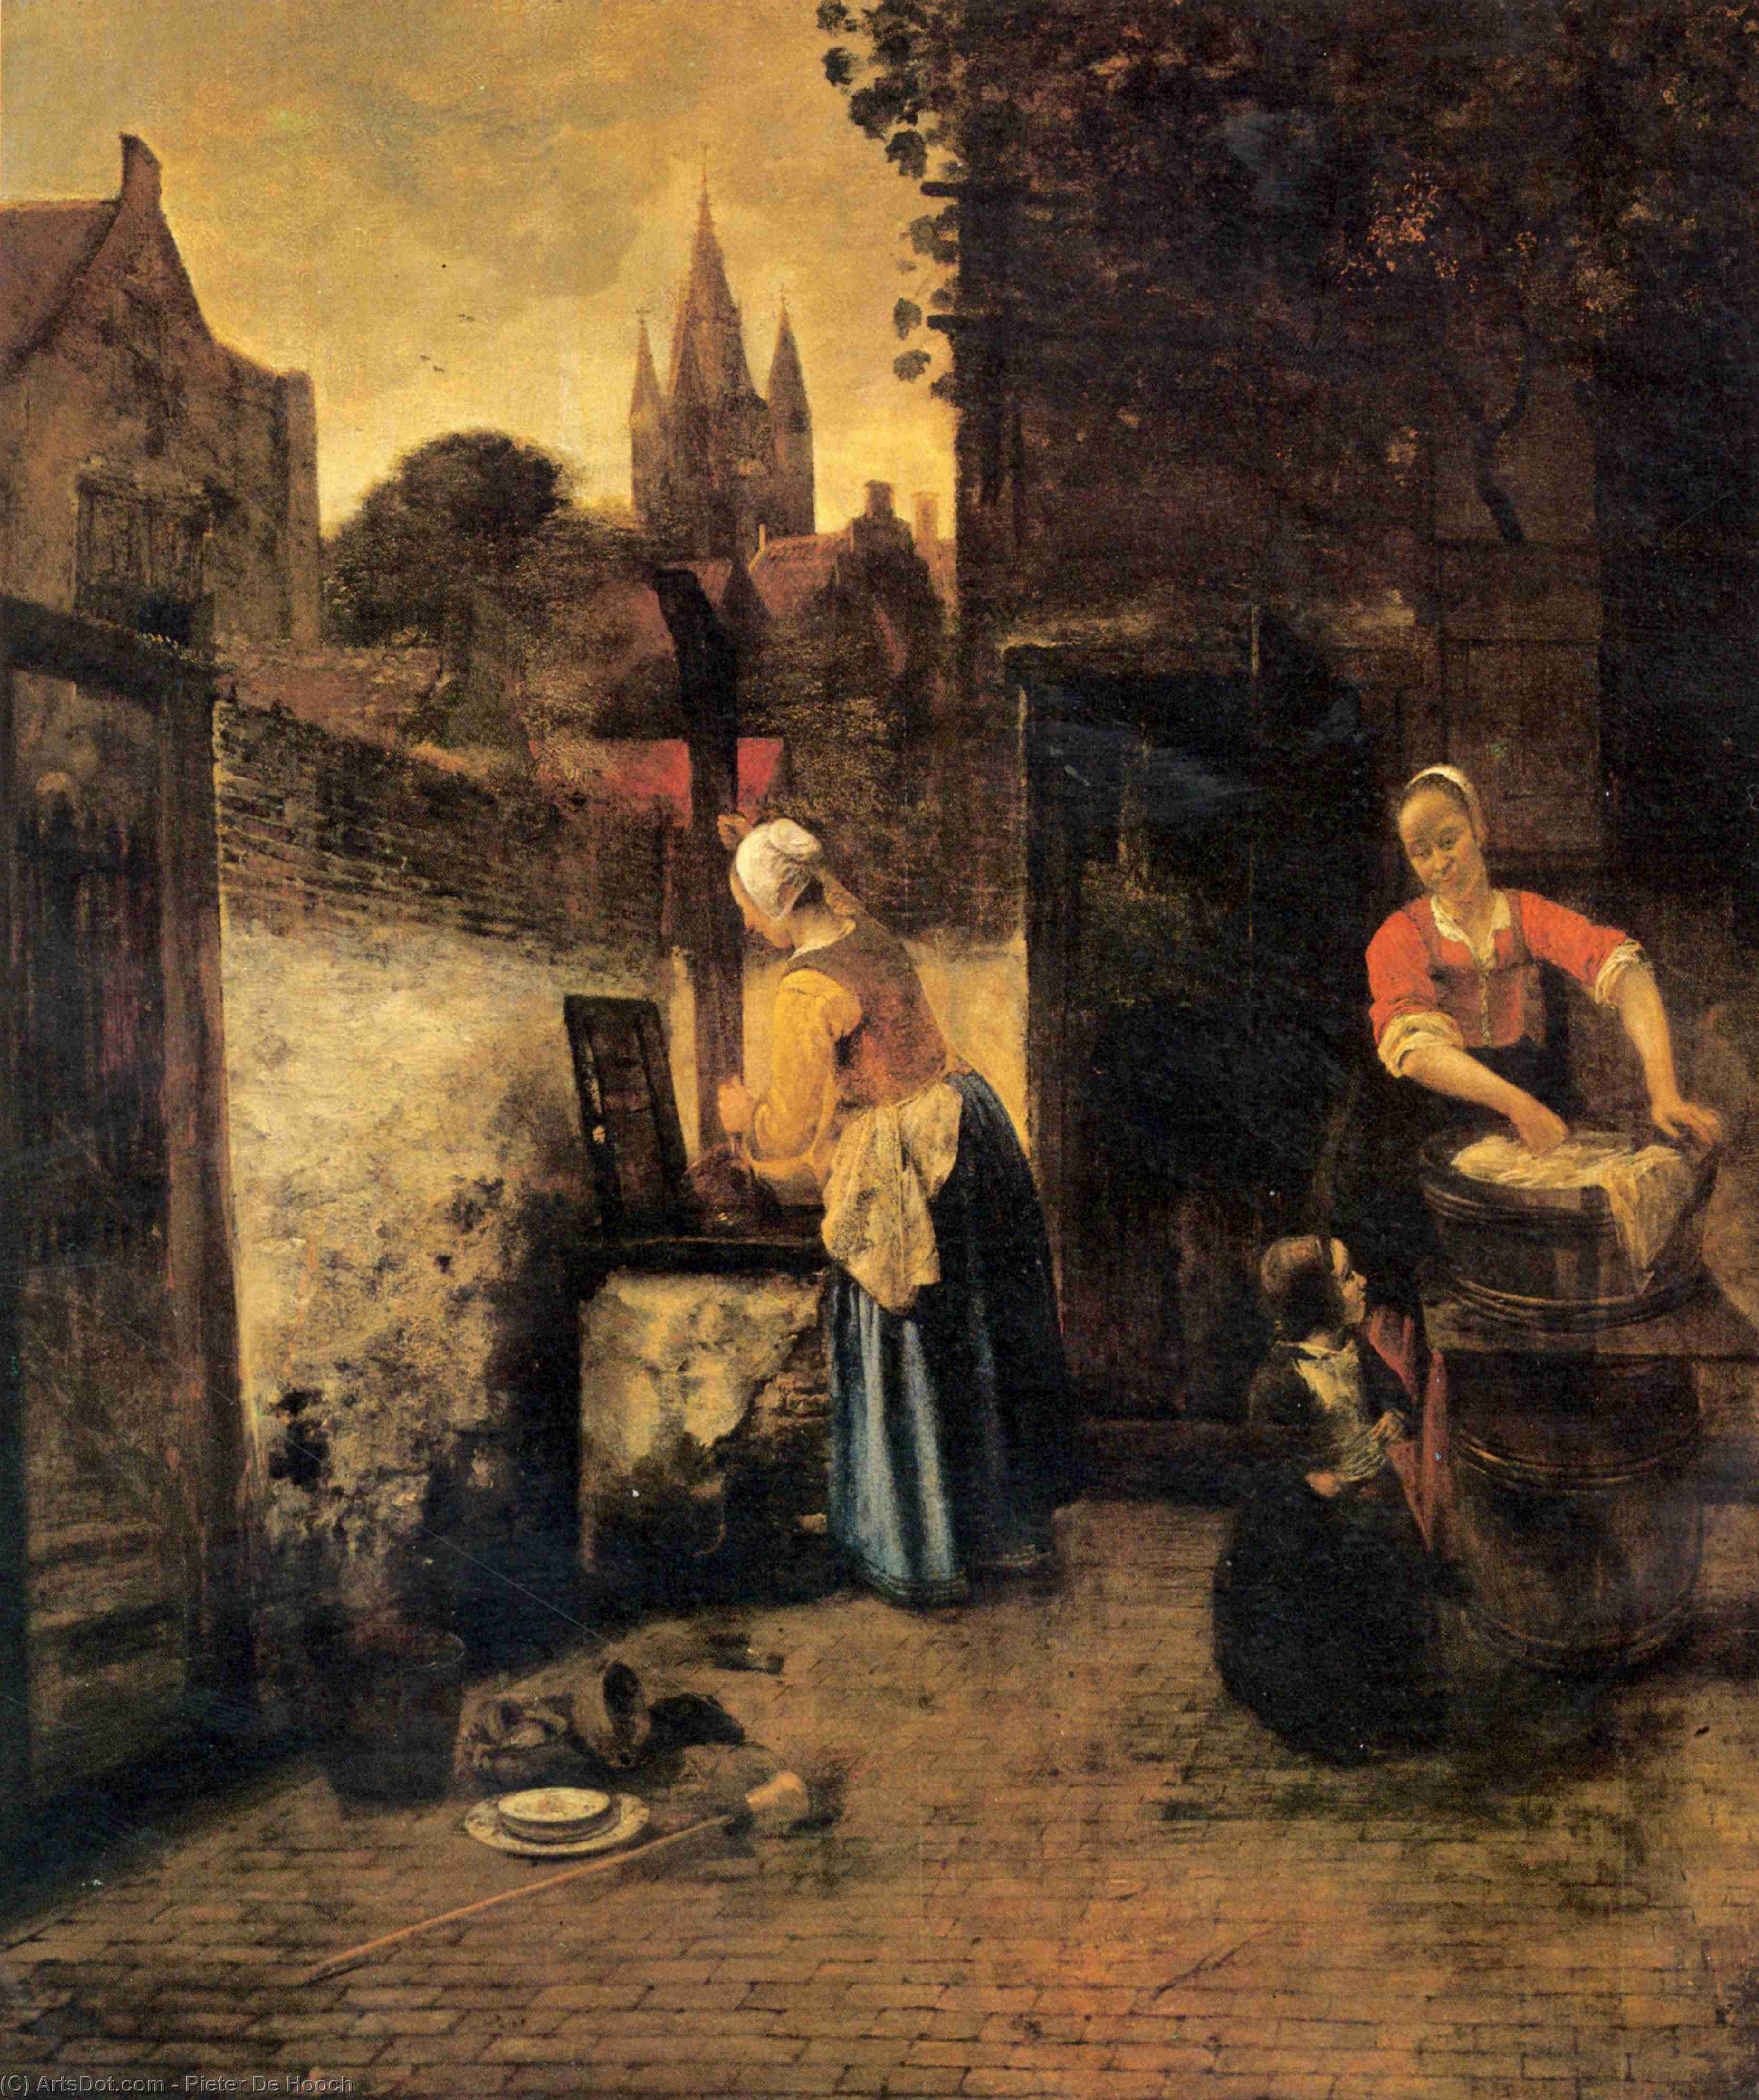 WikiOO.org - Encyclopedia of Fine Arts - Festés, Grafika Pieter De Hooch - Two women with a child in court